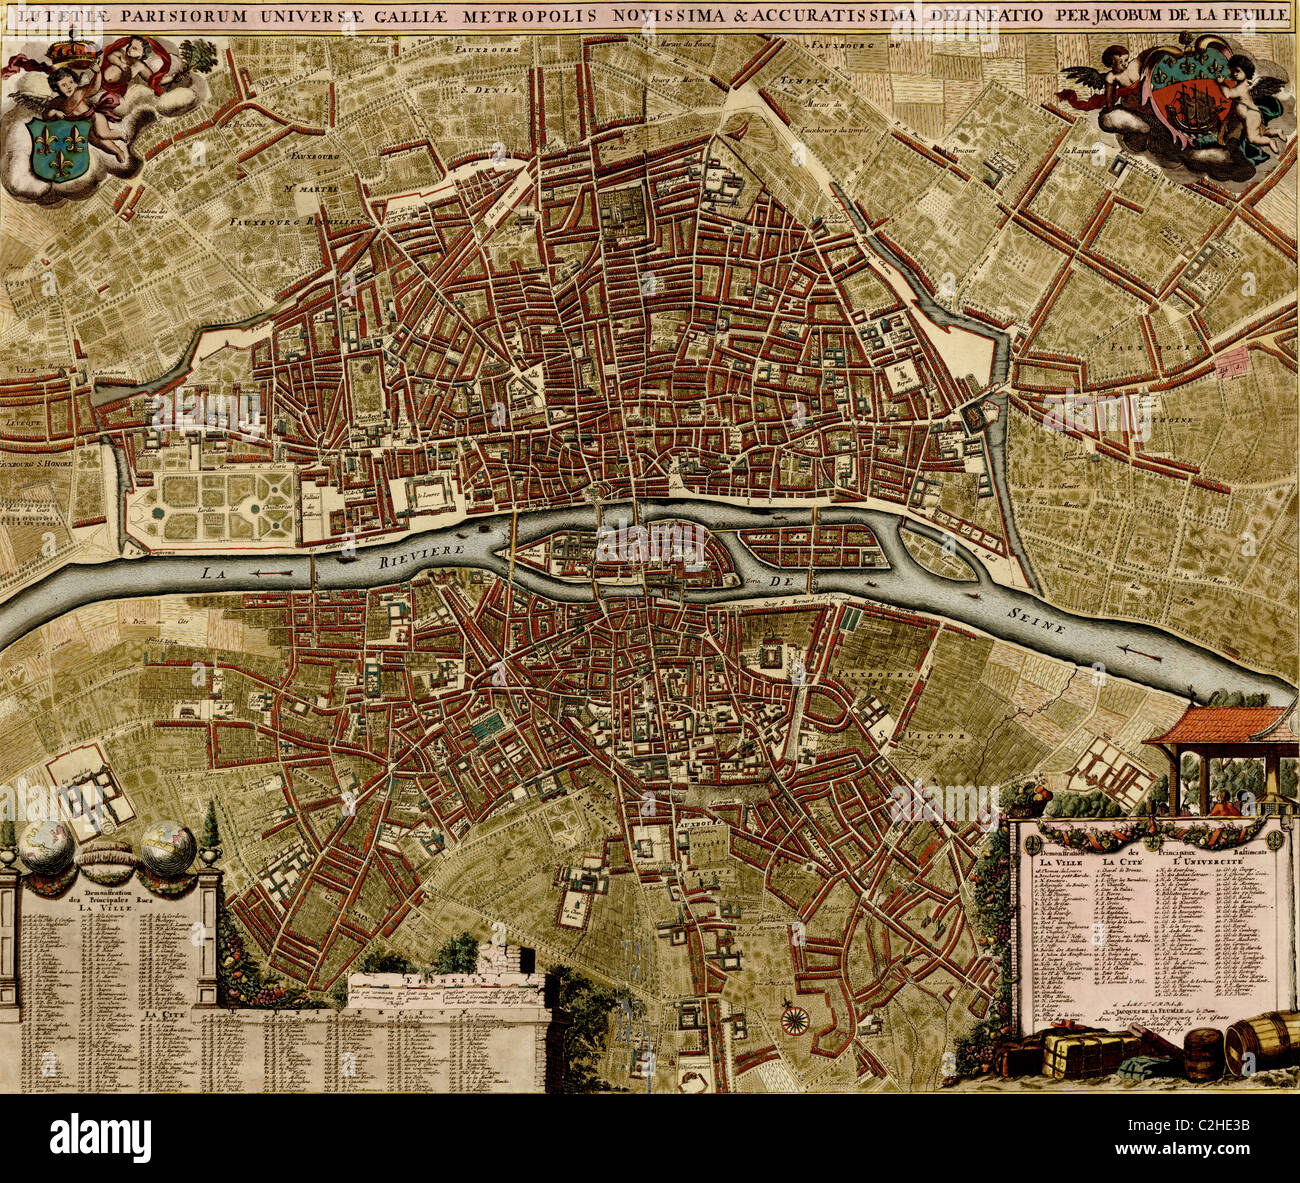 Plan de la ville de Paris - 1700 Banque D'Images